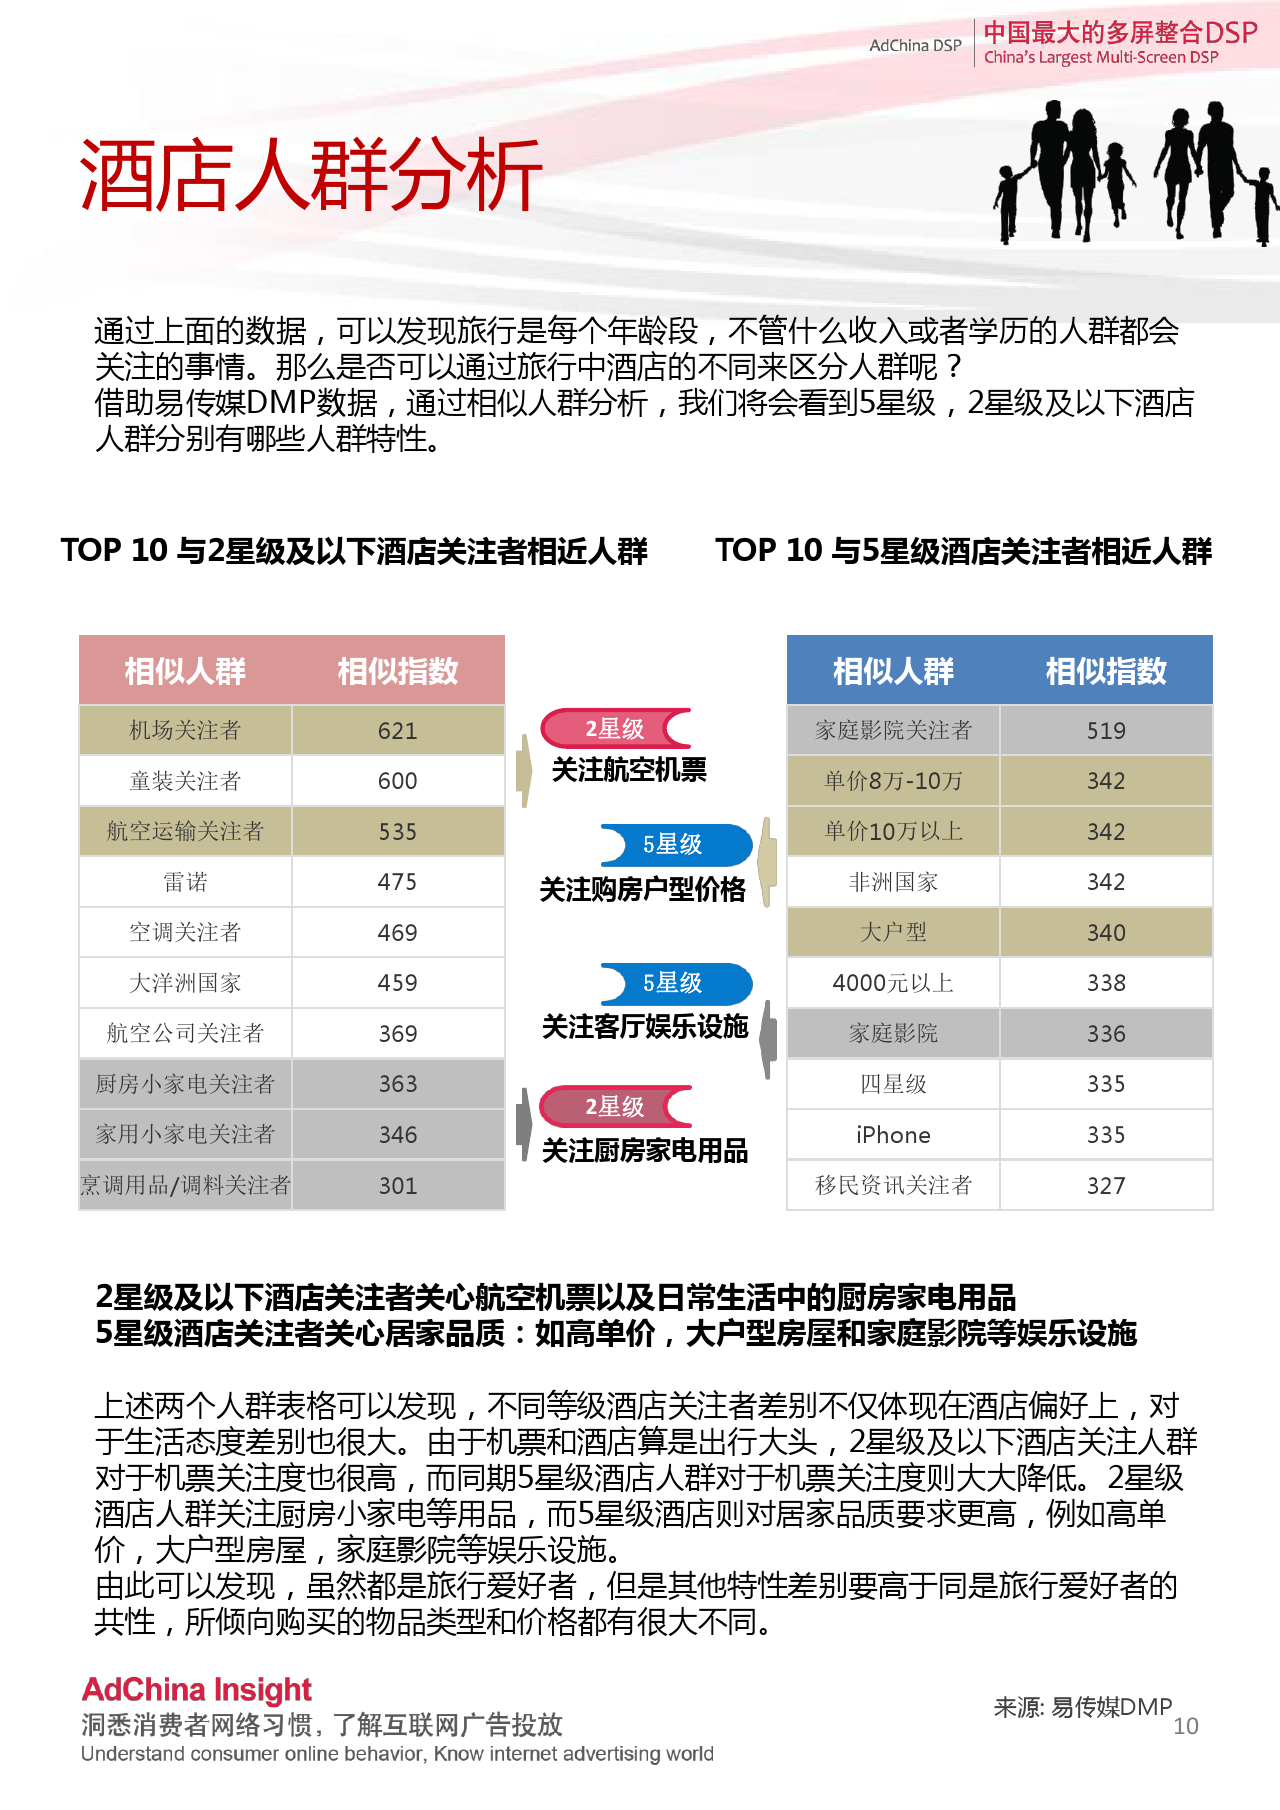 中国DSP行业跨屏数据盘点  9月份_000010